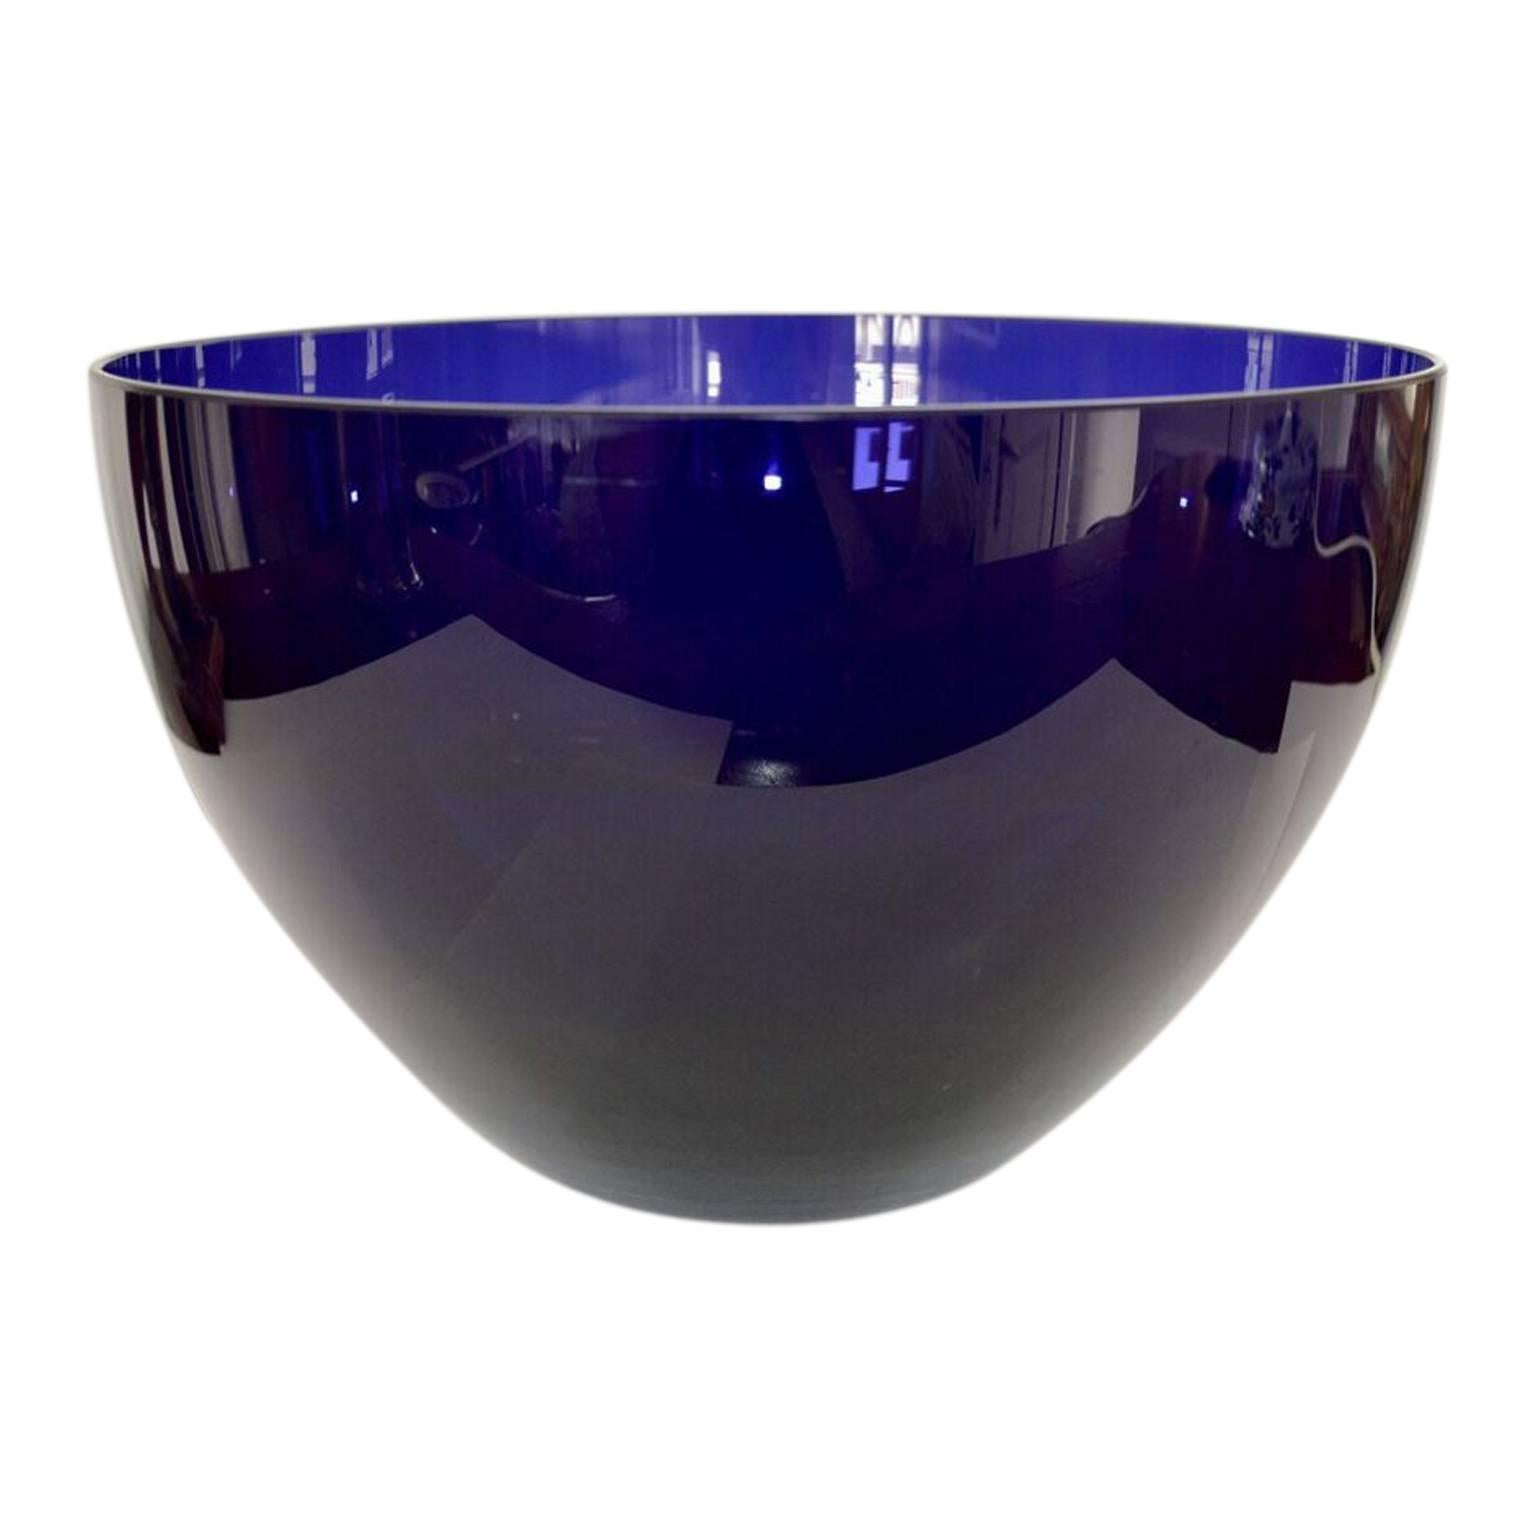 Vintage cobalt blue glass bowl, serving dish or decor fruit bowl.